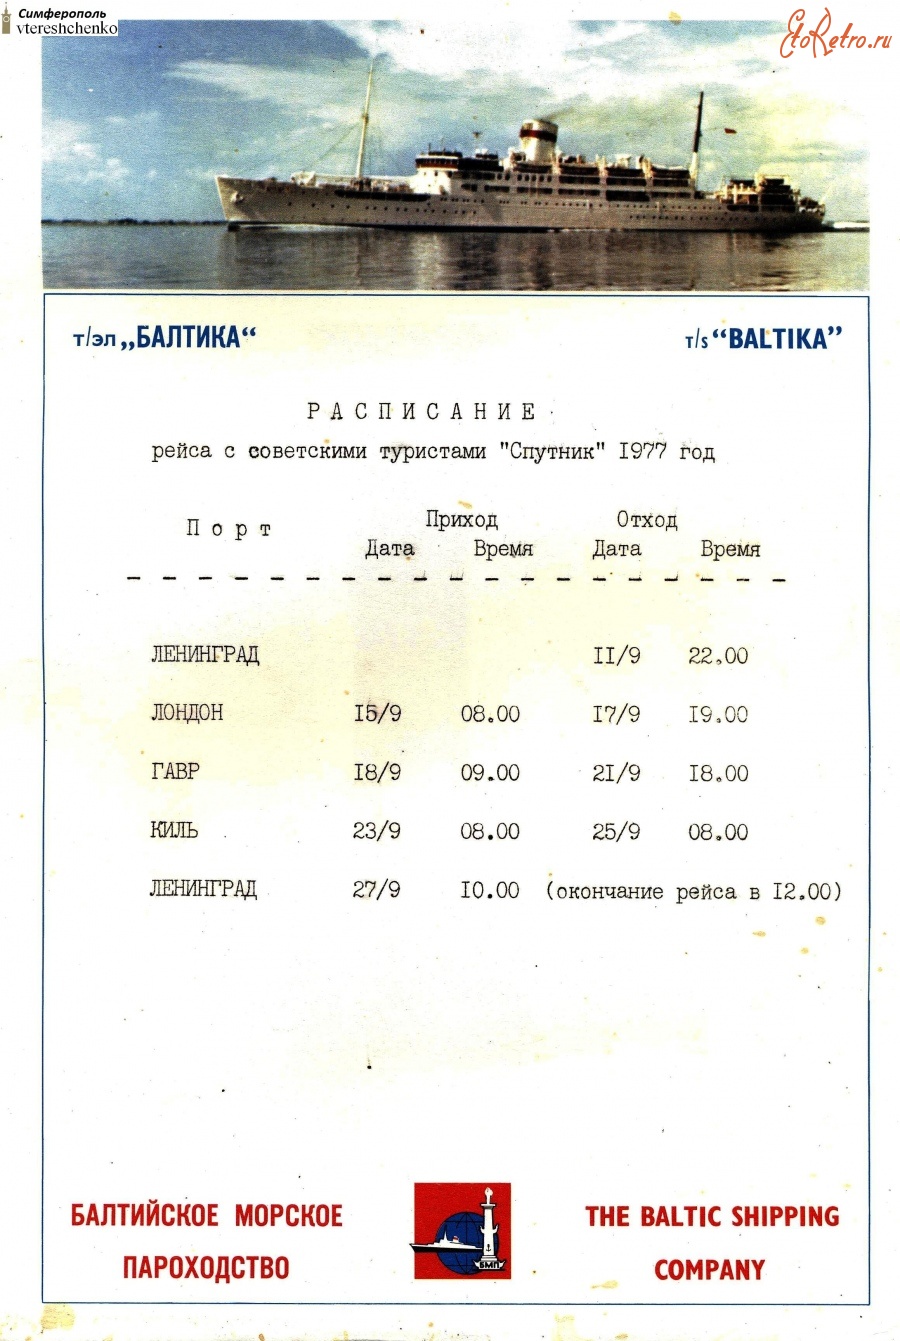 Разное - Расписание рейса с советскими туристами «Спутник» 1977 год